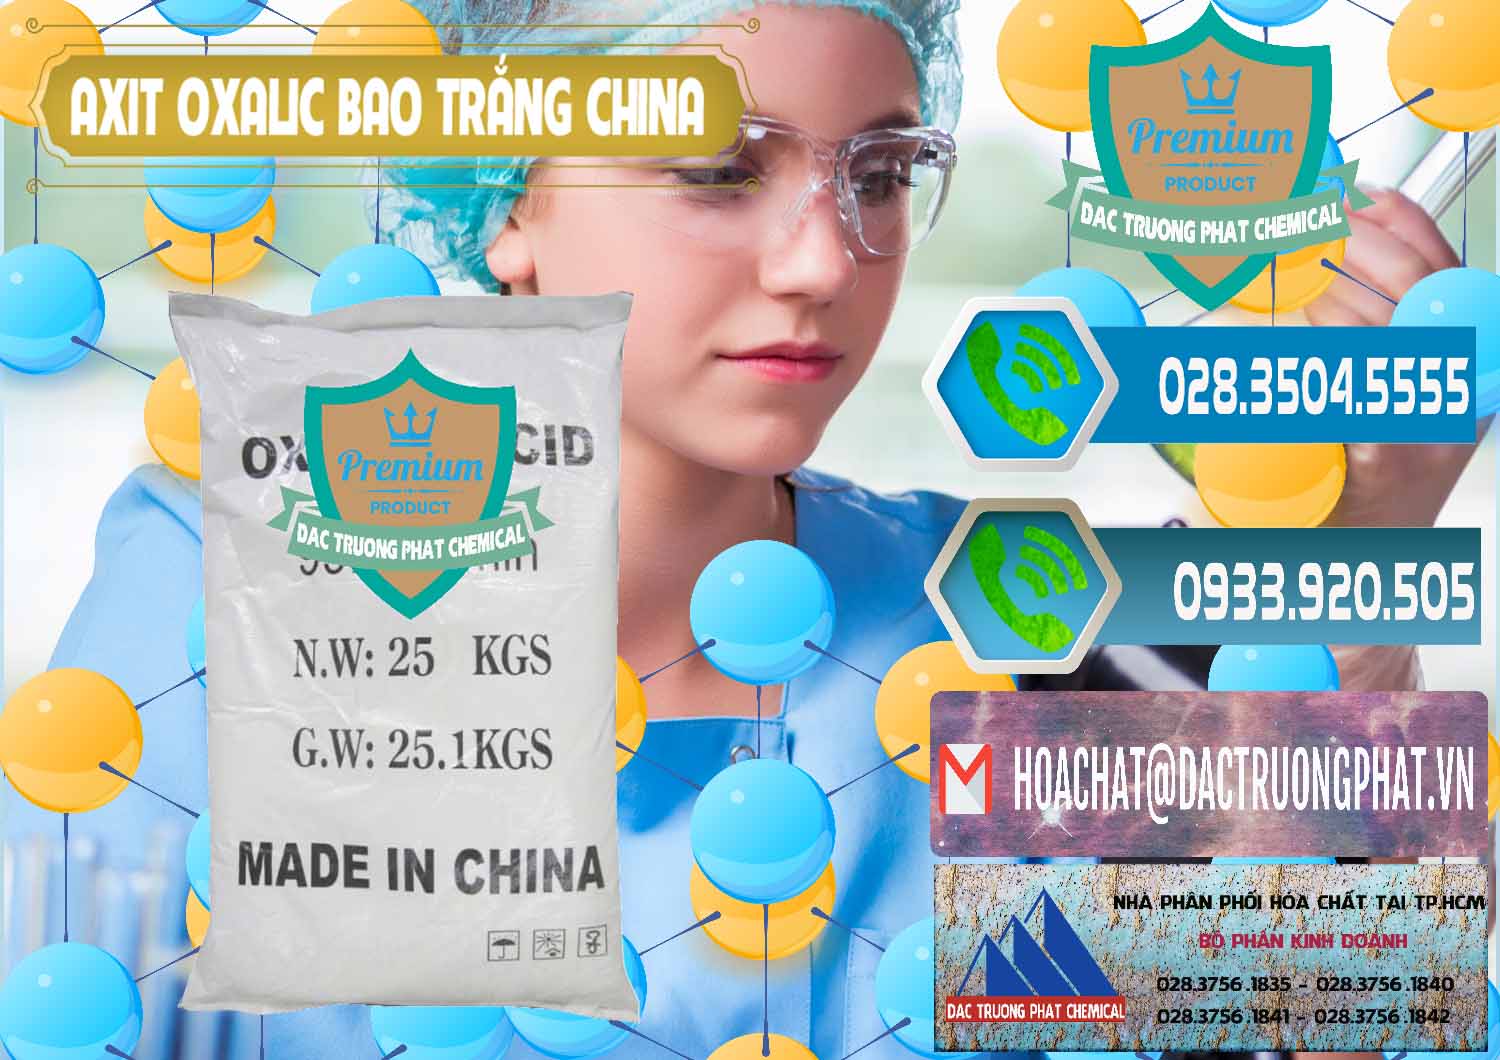 Đơn vị chuyên nhập khẩu ( bán ) Acid Oxalic – Axit Oxalic 99.6% Bao Trắng Trung Quốc China - 0270 - Cty chuyên cung cấp và bán hóa chất tại TP.HCM - congtyhoachat.net